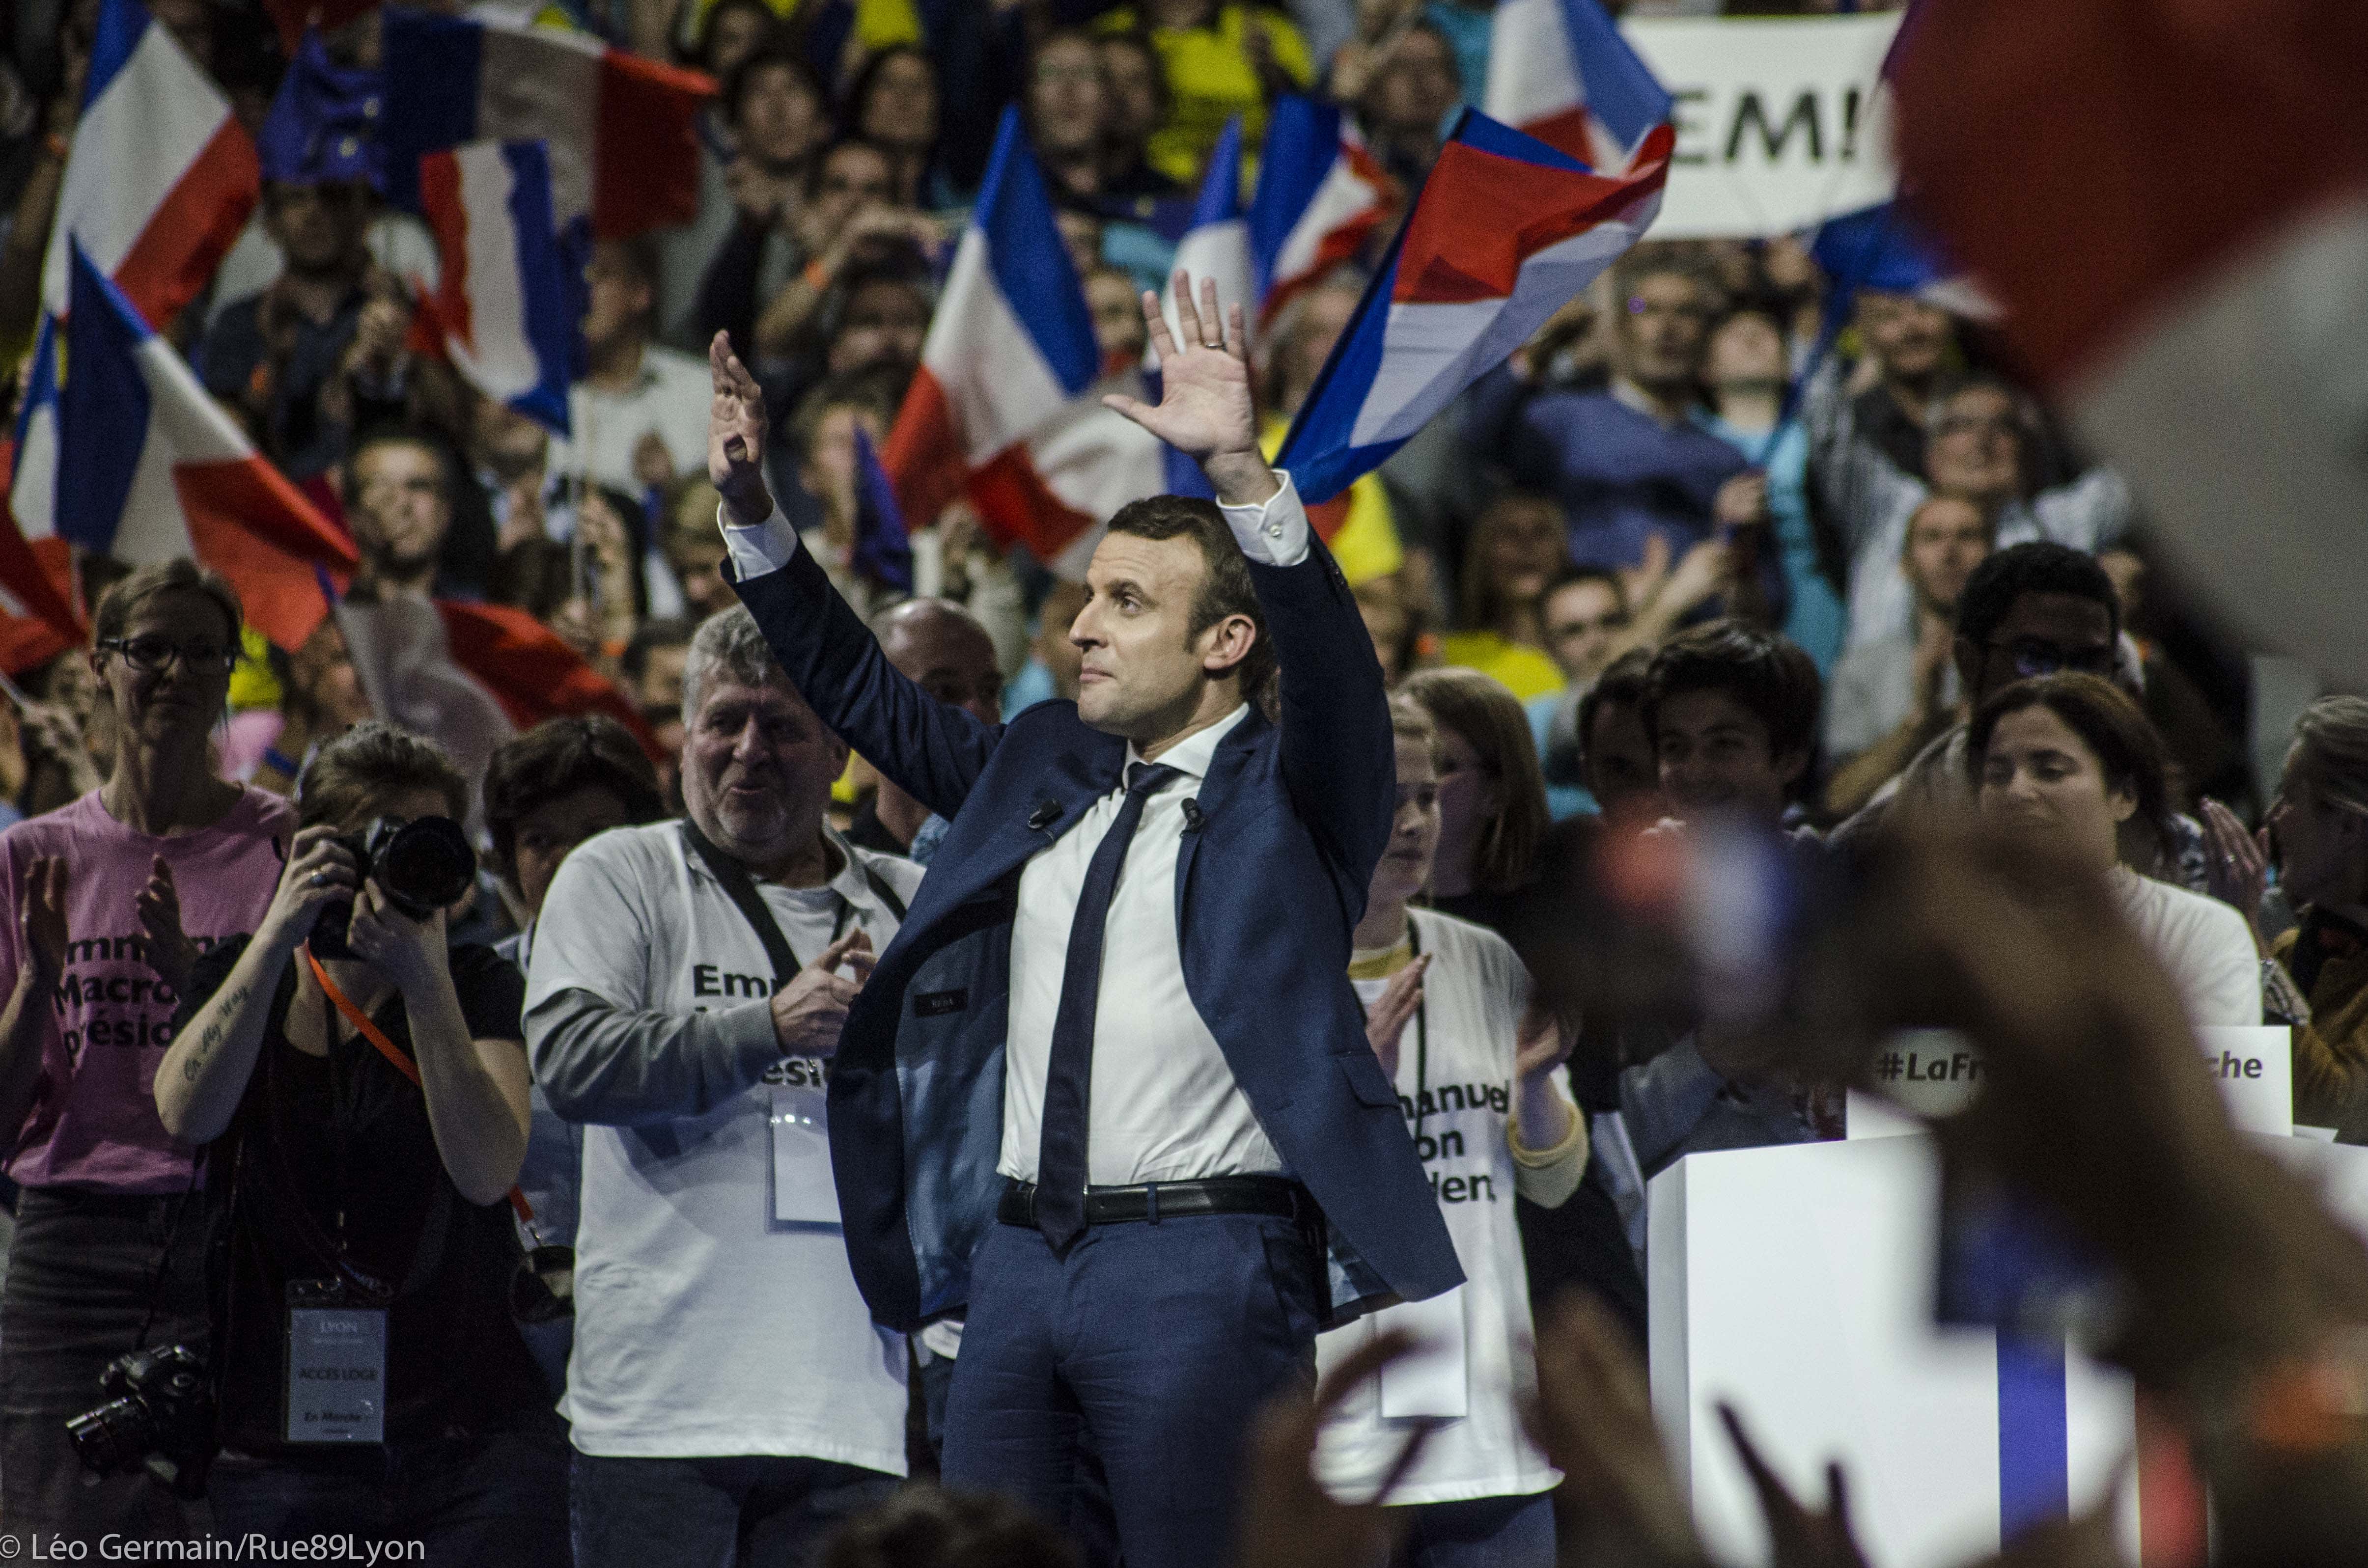 Emmanuel Macron lors de son meeting à Lyon le 4 février au palais des sports. ©Léo Germain/Rue89Lyon